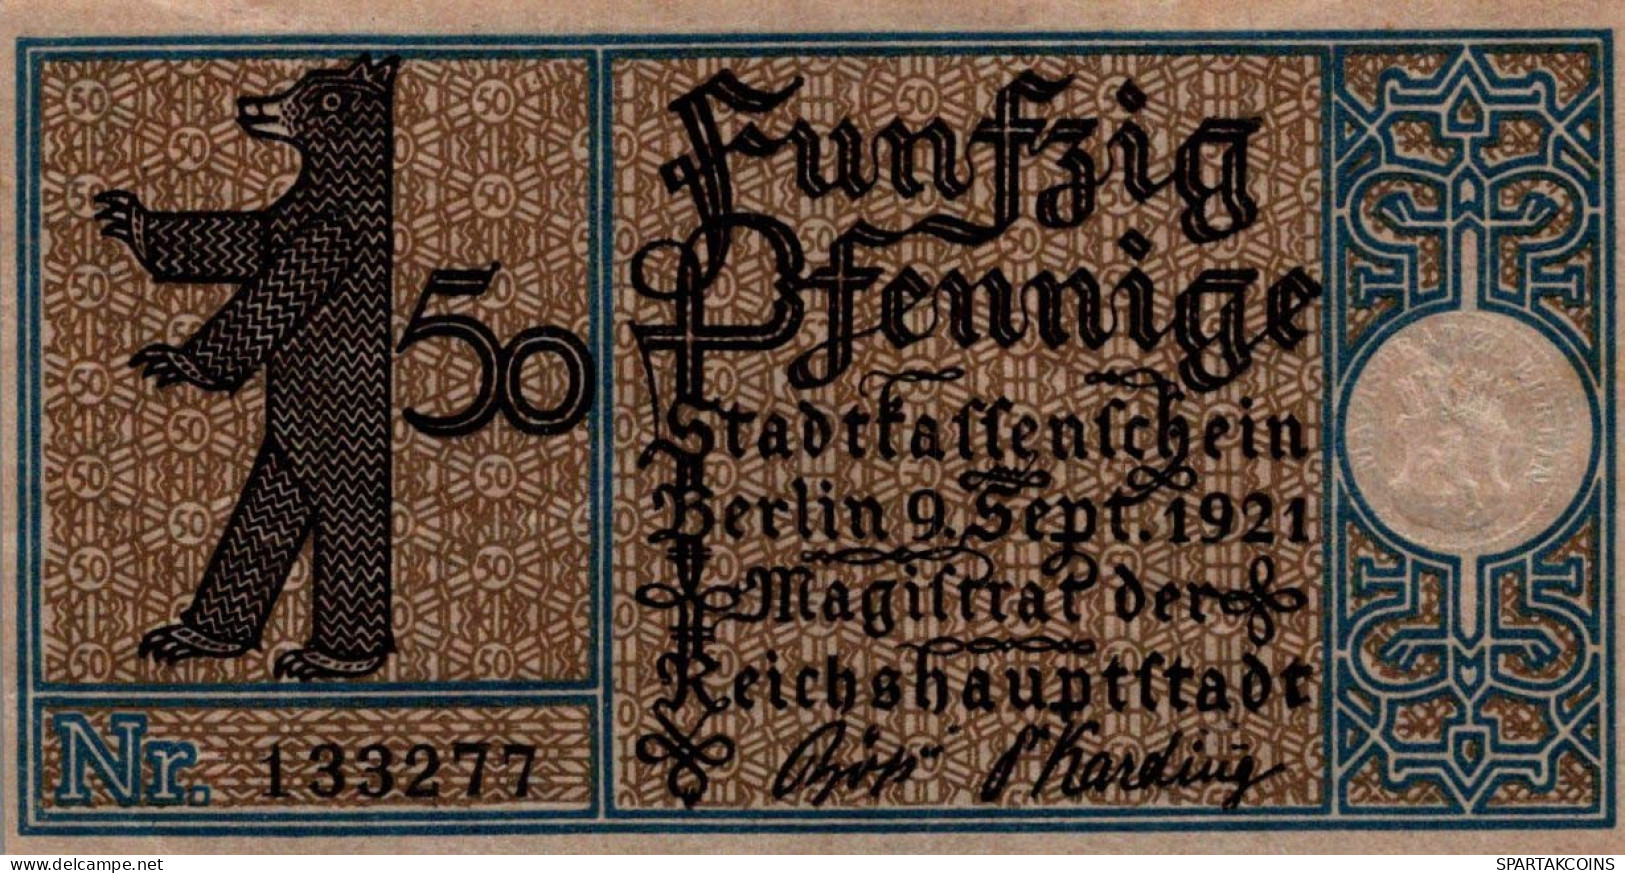 50 PFENNIG 1921 Stadt BERLIN UNC DEUTSCHLAND Notgeld Banknote #PH744 - [11] Emissioni Locali